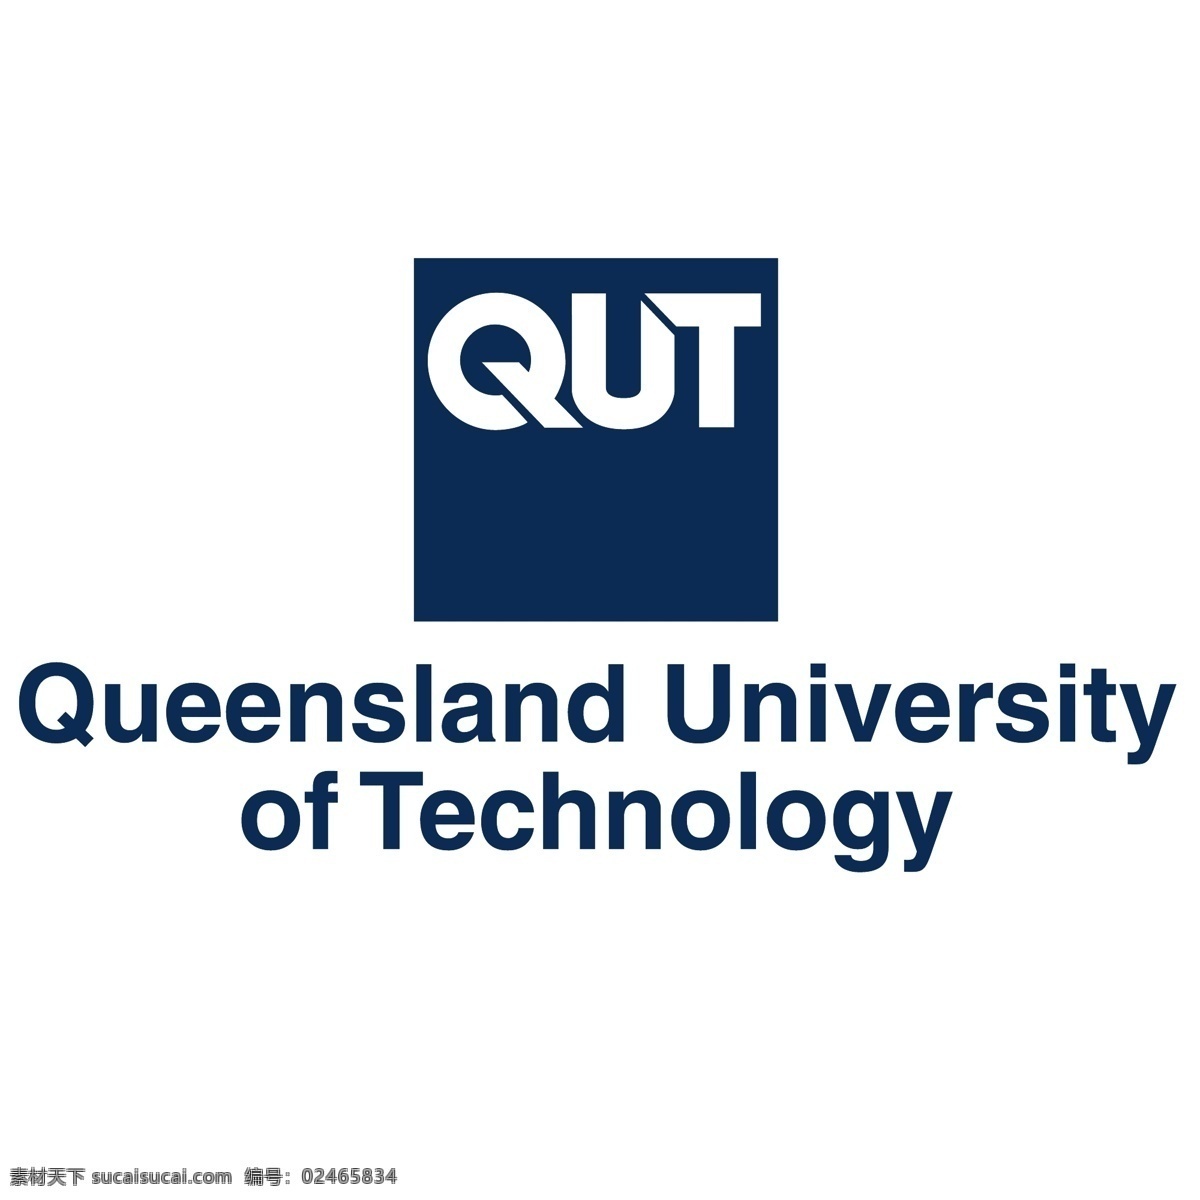 昆士兰 科技 大学 大学qut eps向量 向量 矢量 qut 白色